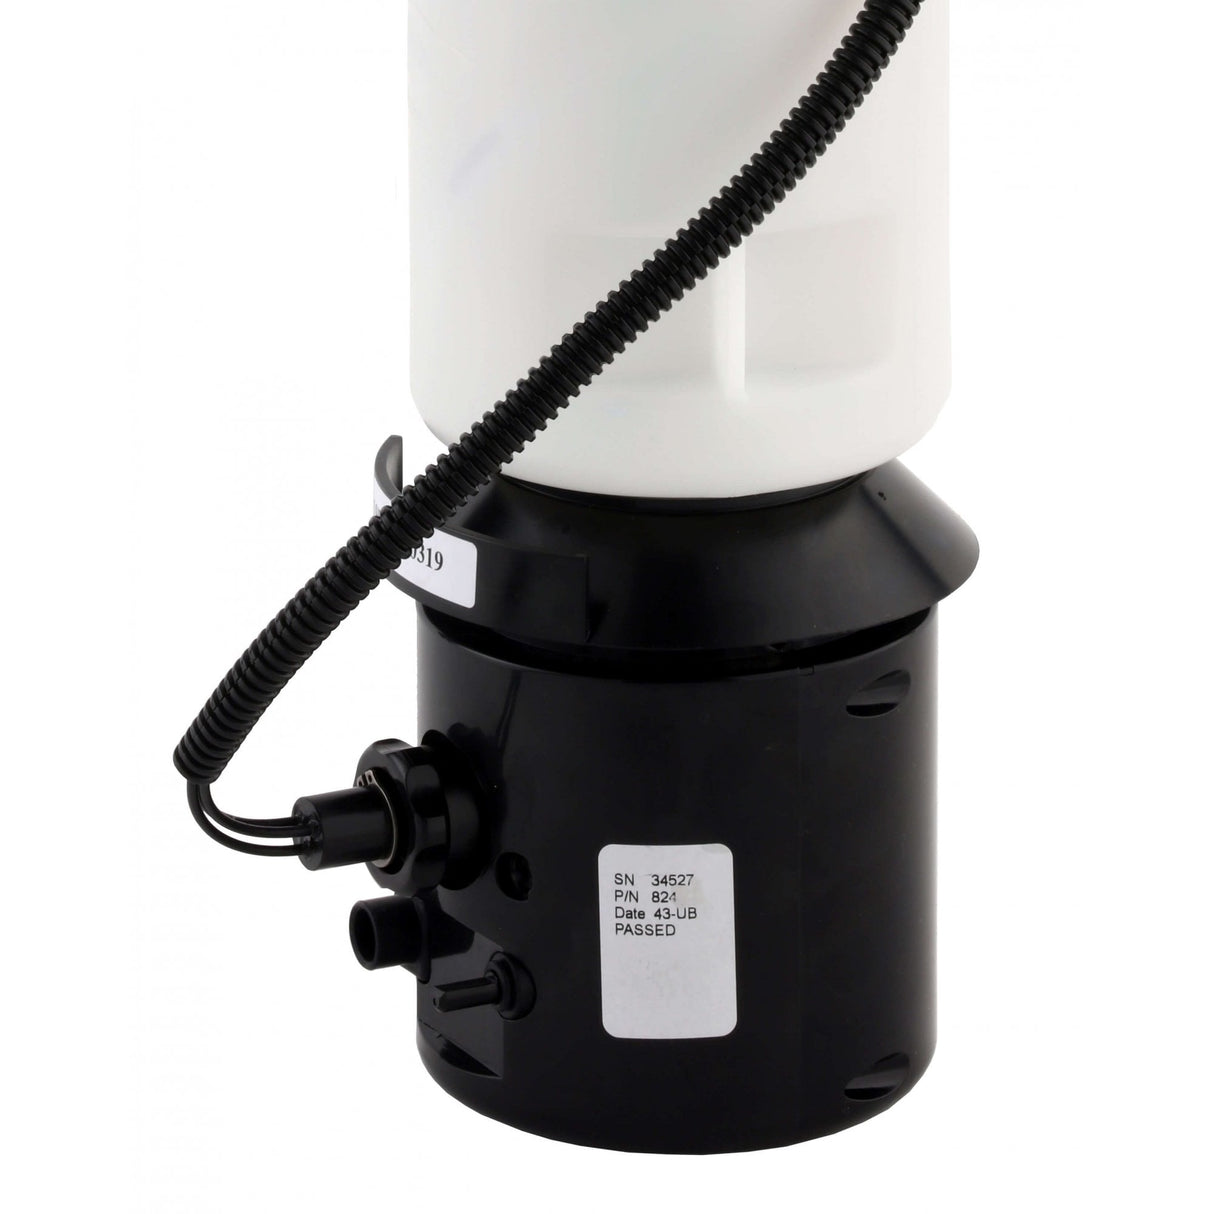 B-824 SureFlo® Distributeur de savon liquide sans contact monté sur comptoir, 1 000 ml